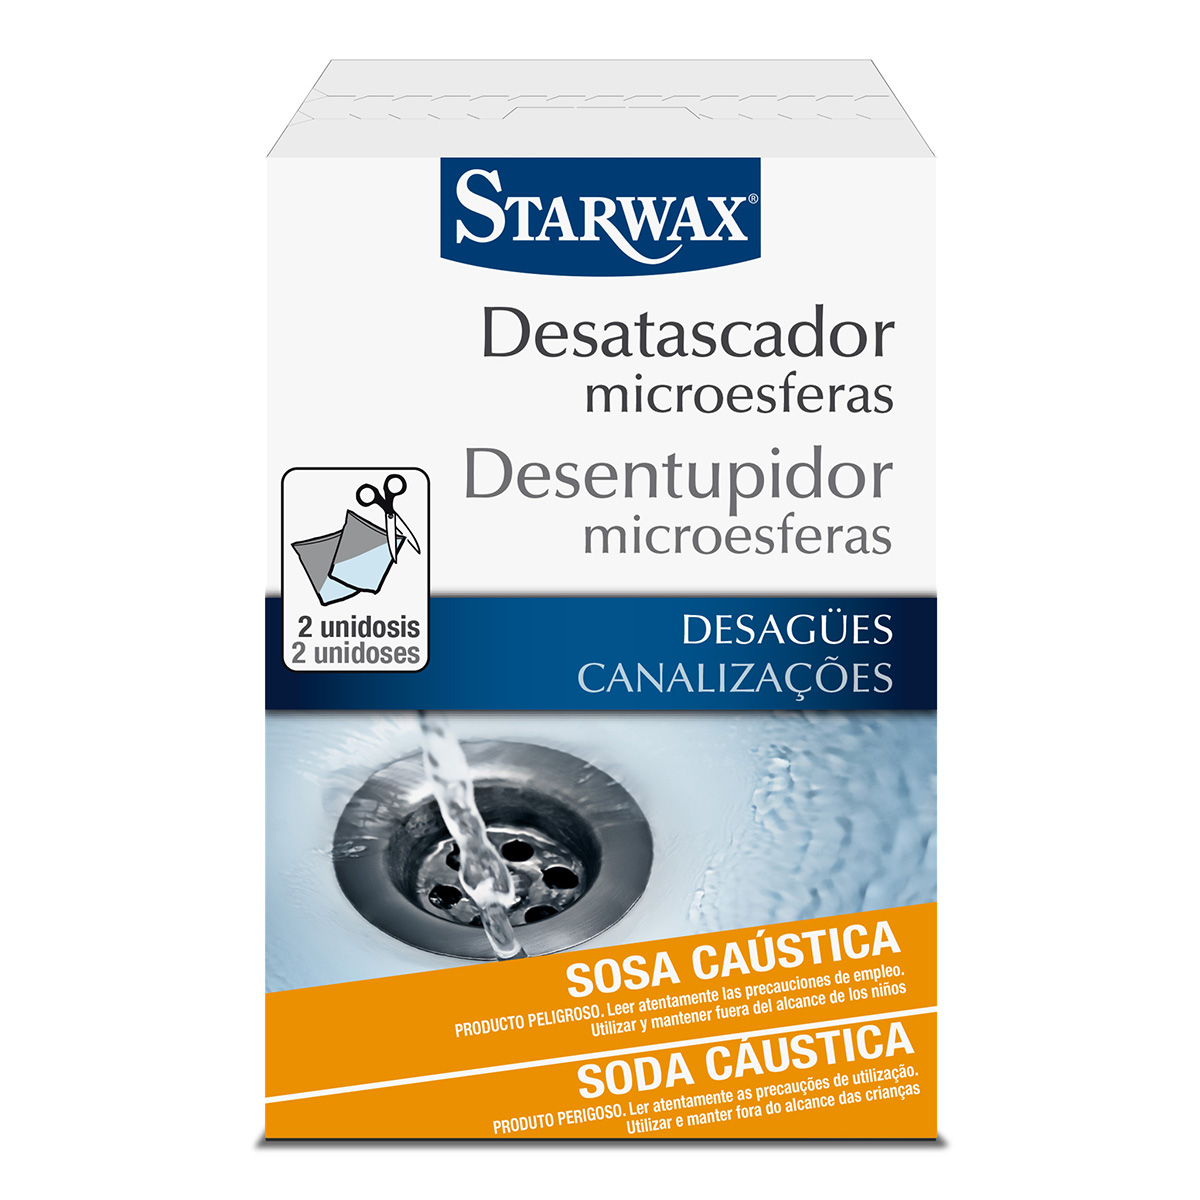 Desatascador microesferas tuberías - Starwax